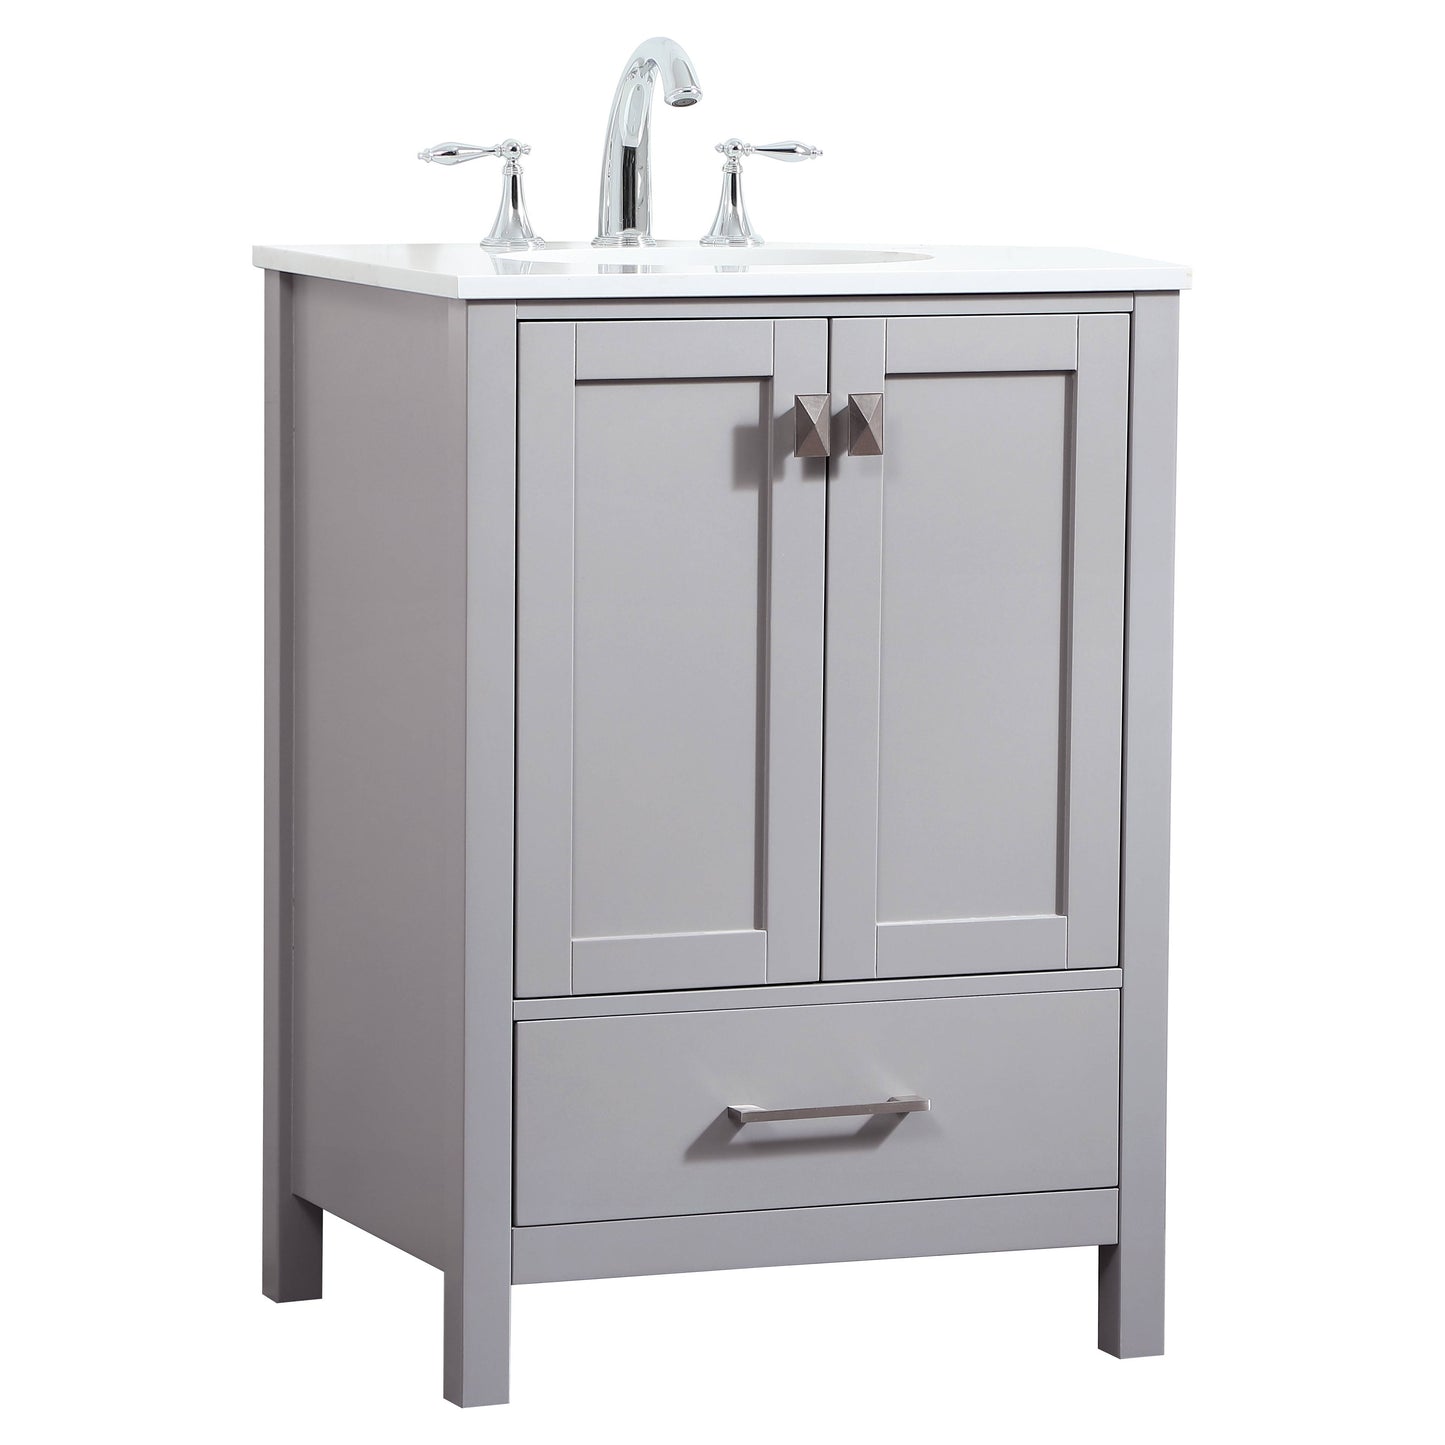 VF18824GR 24" Single Bathroom Vanity in Grey